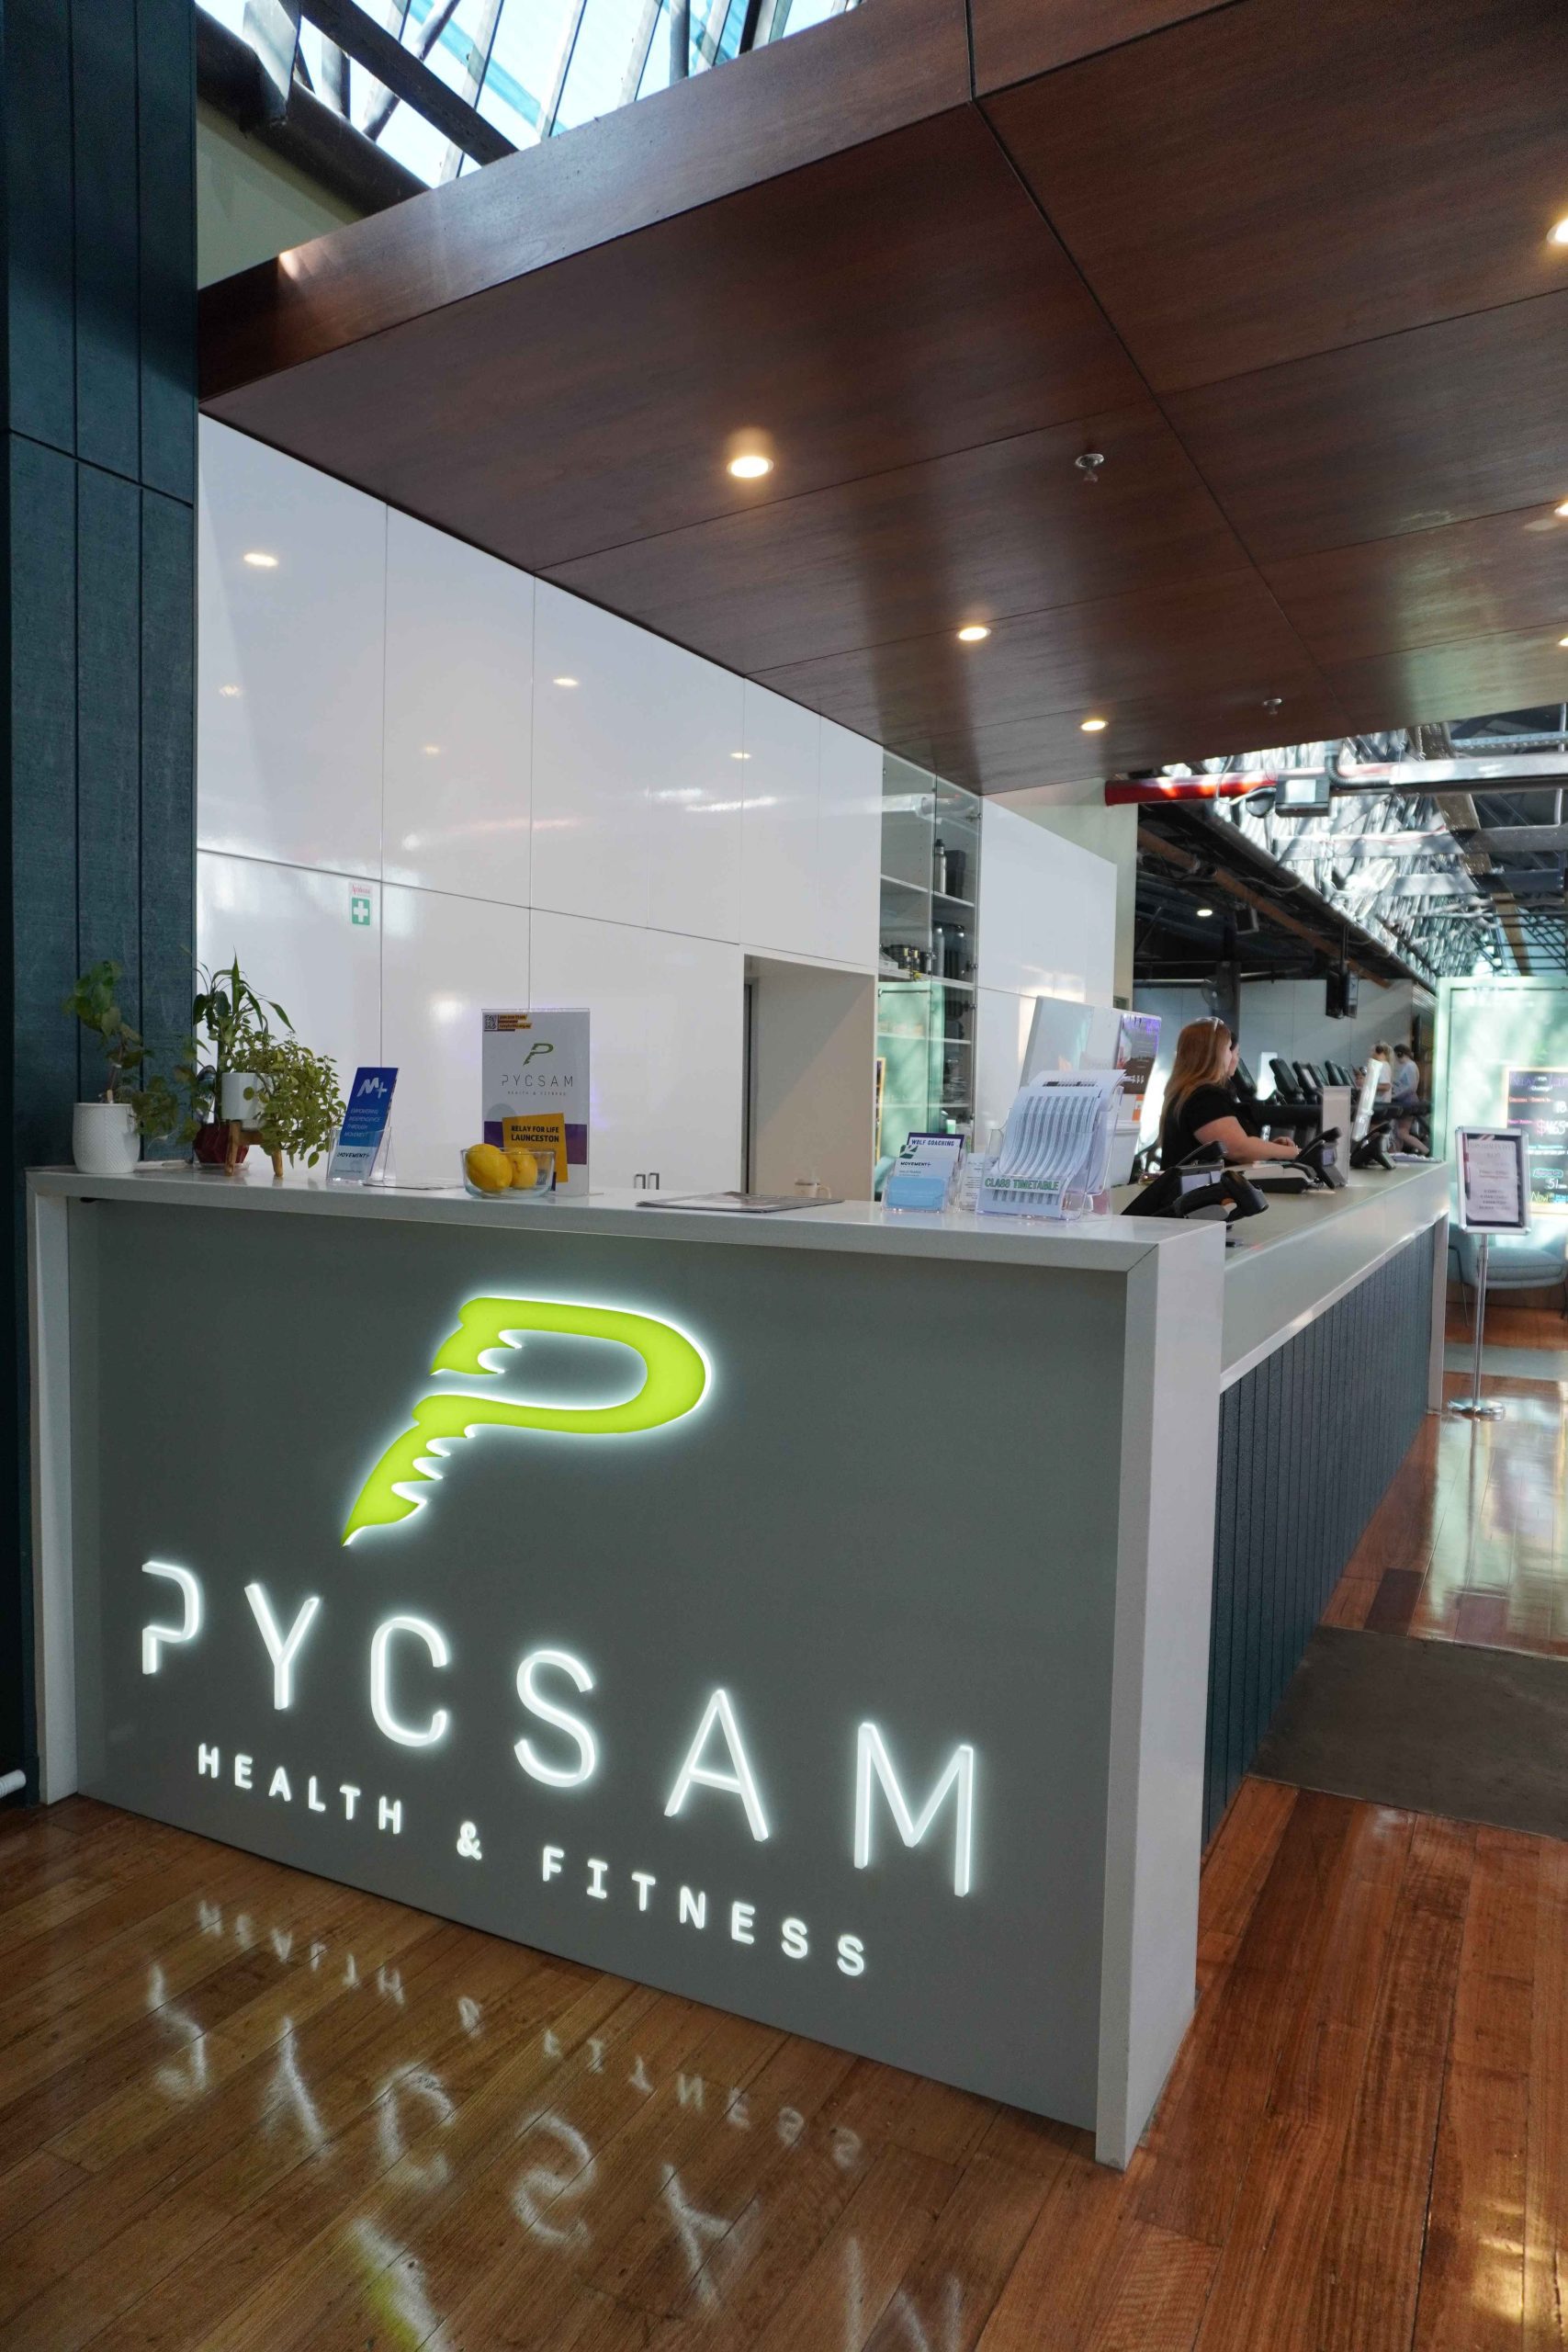 Pycsam Health & Fitness